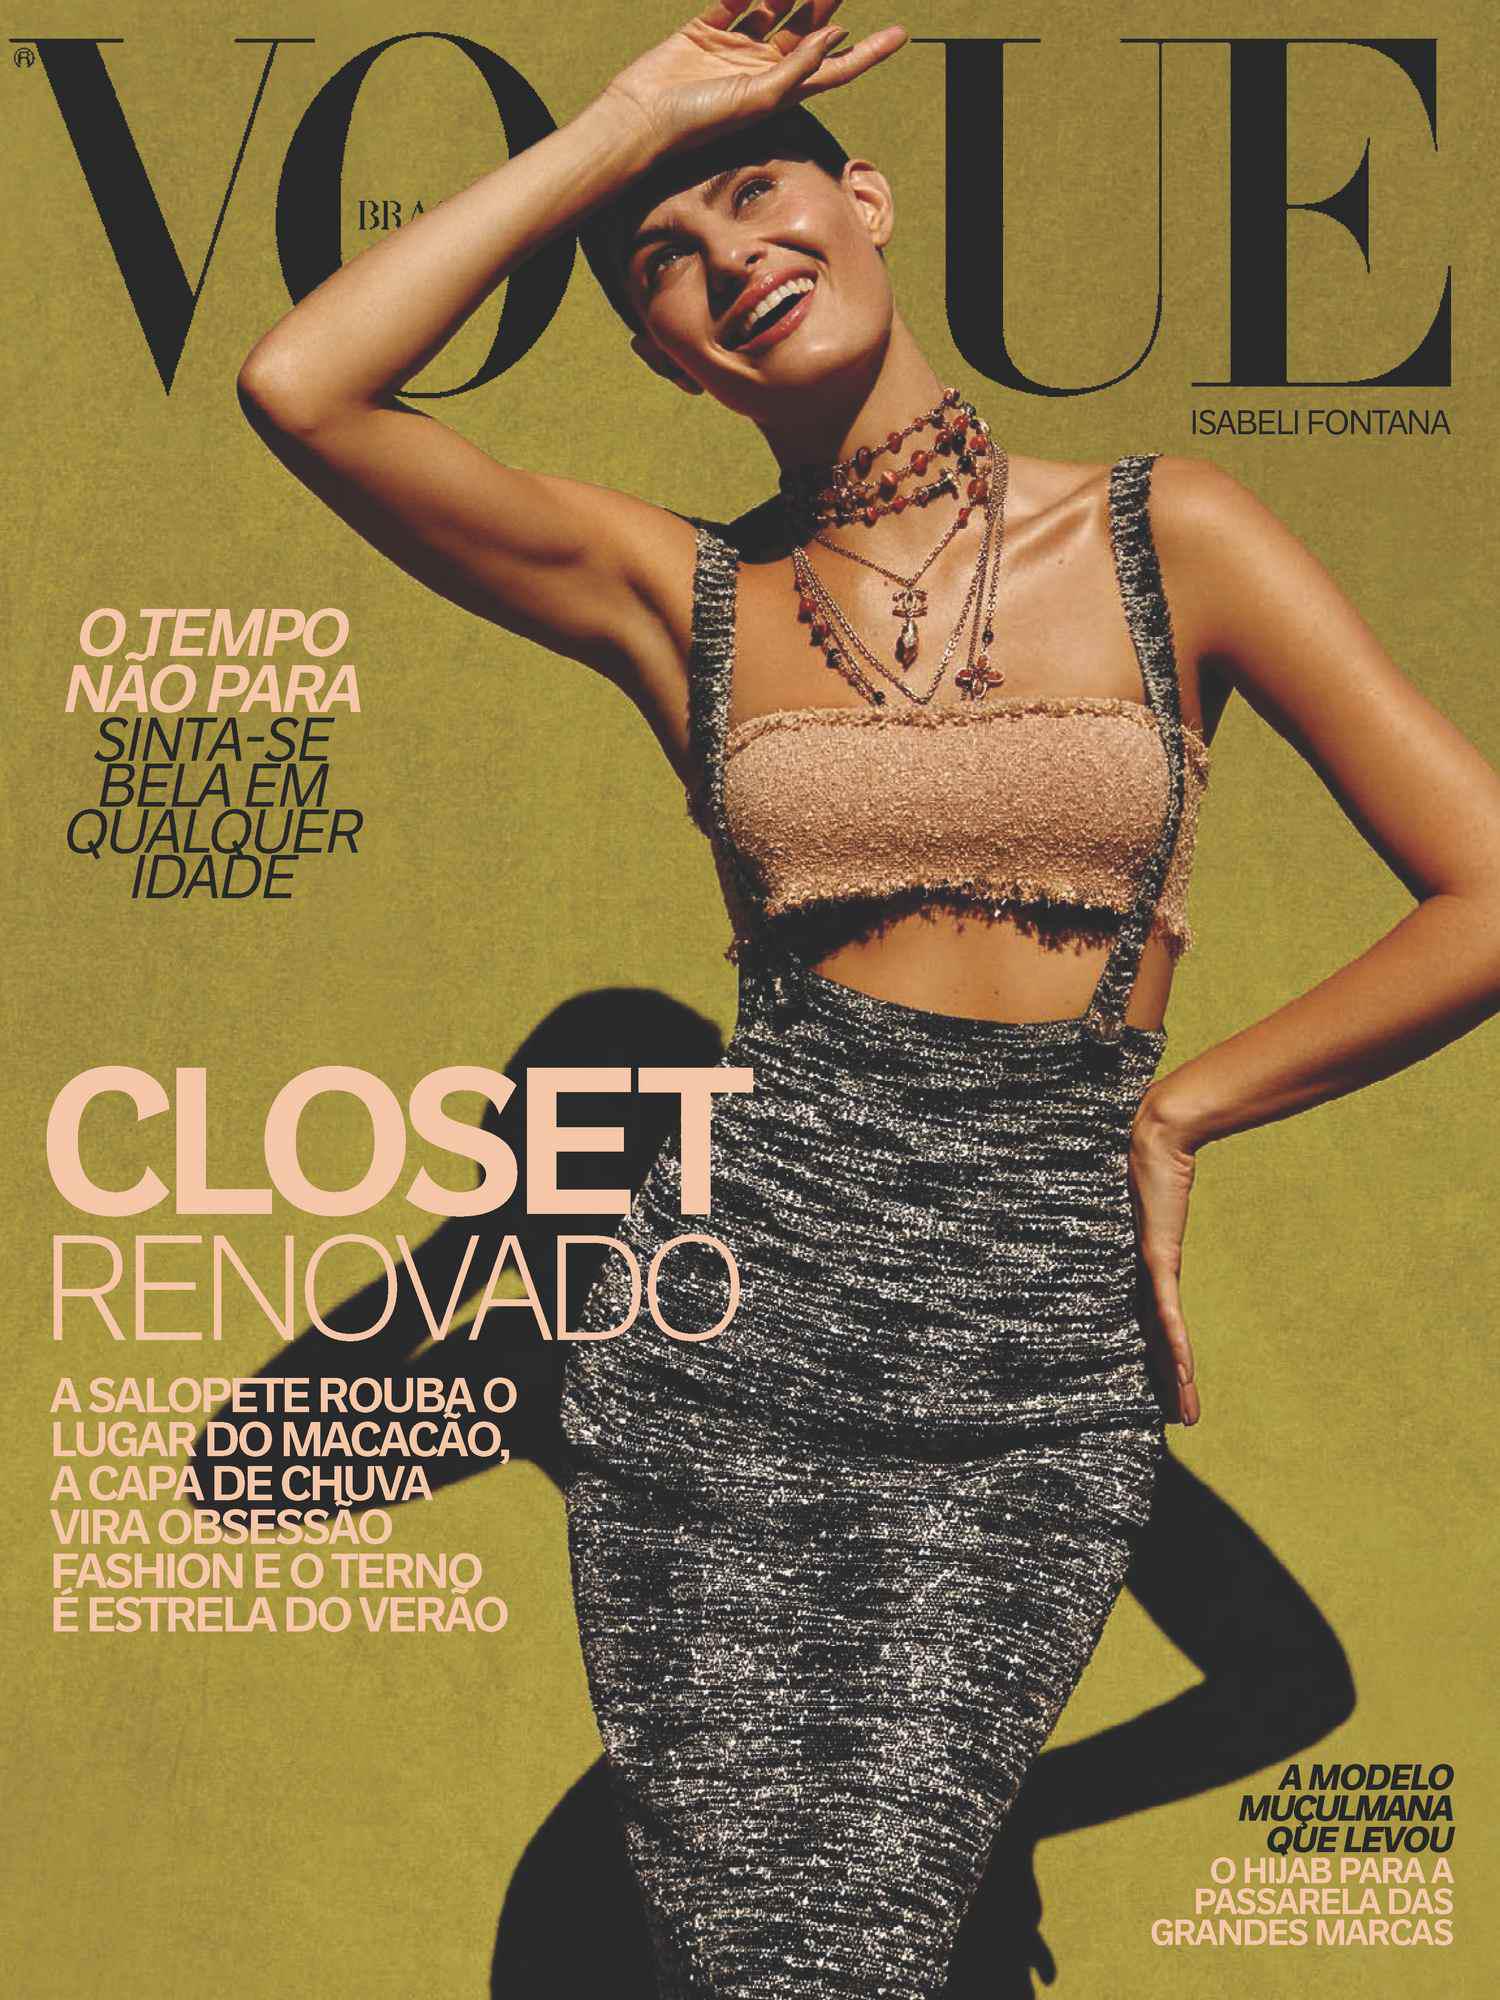 Обложки Vogue